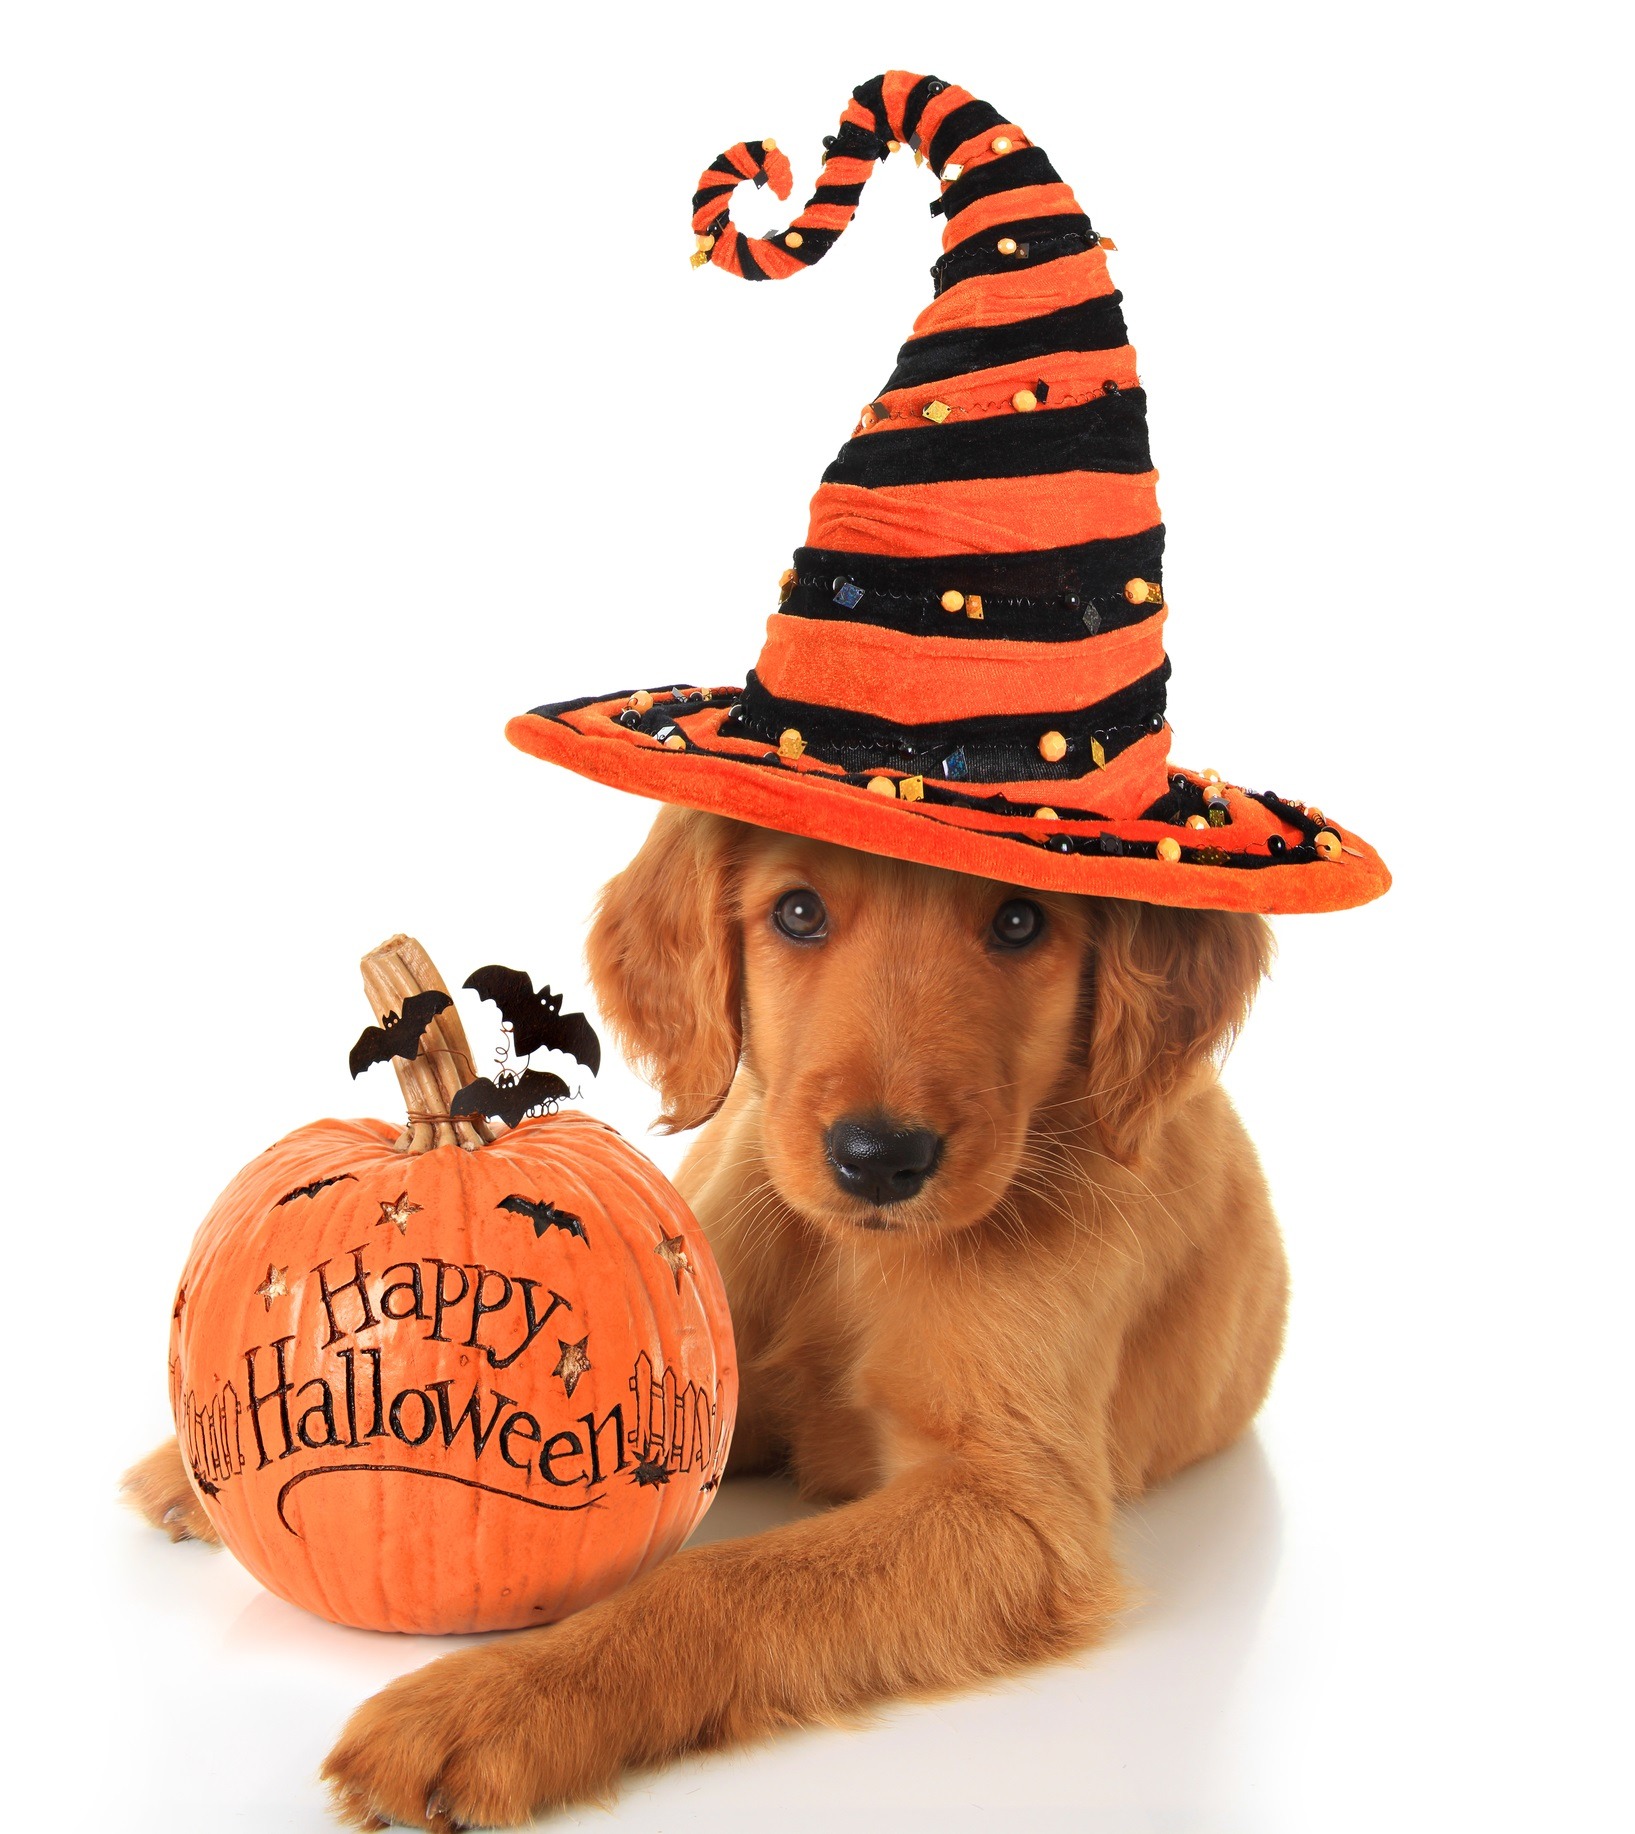 Avoiding a frightful Halloween for your dog